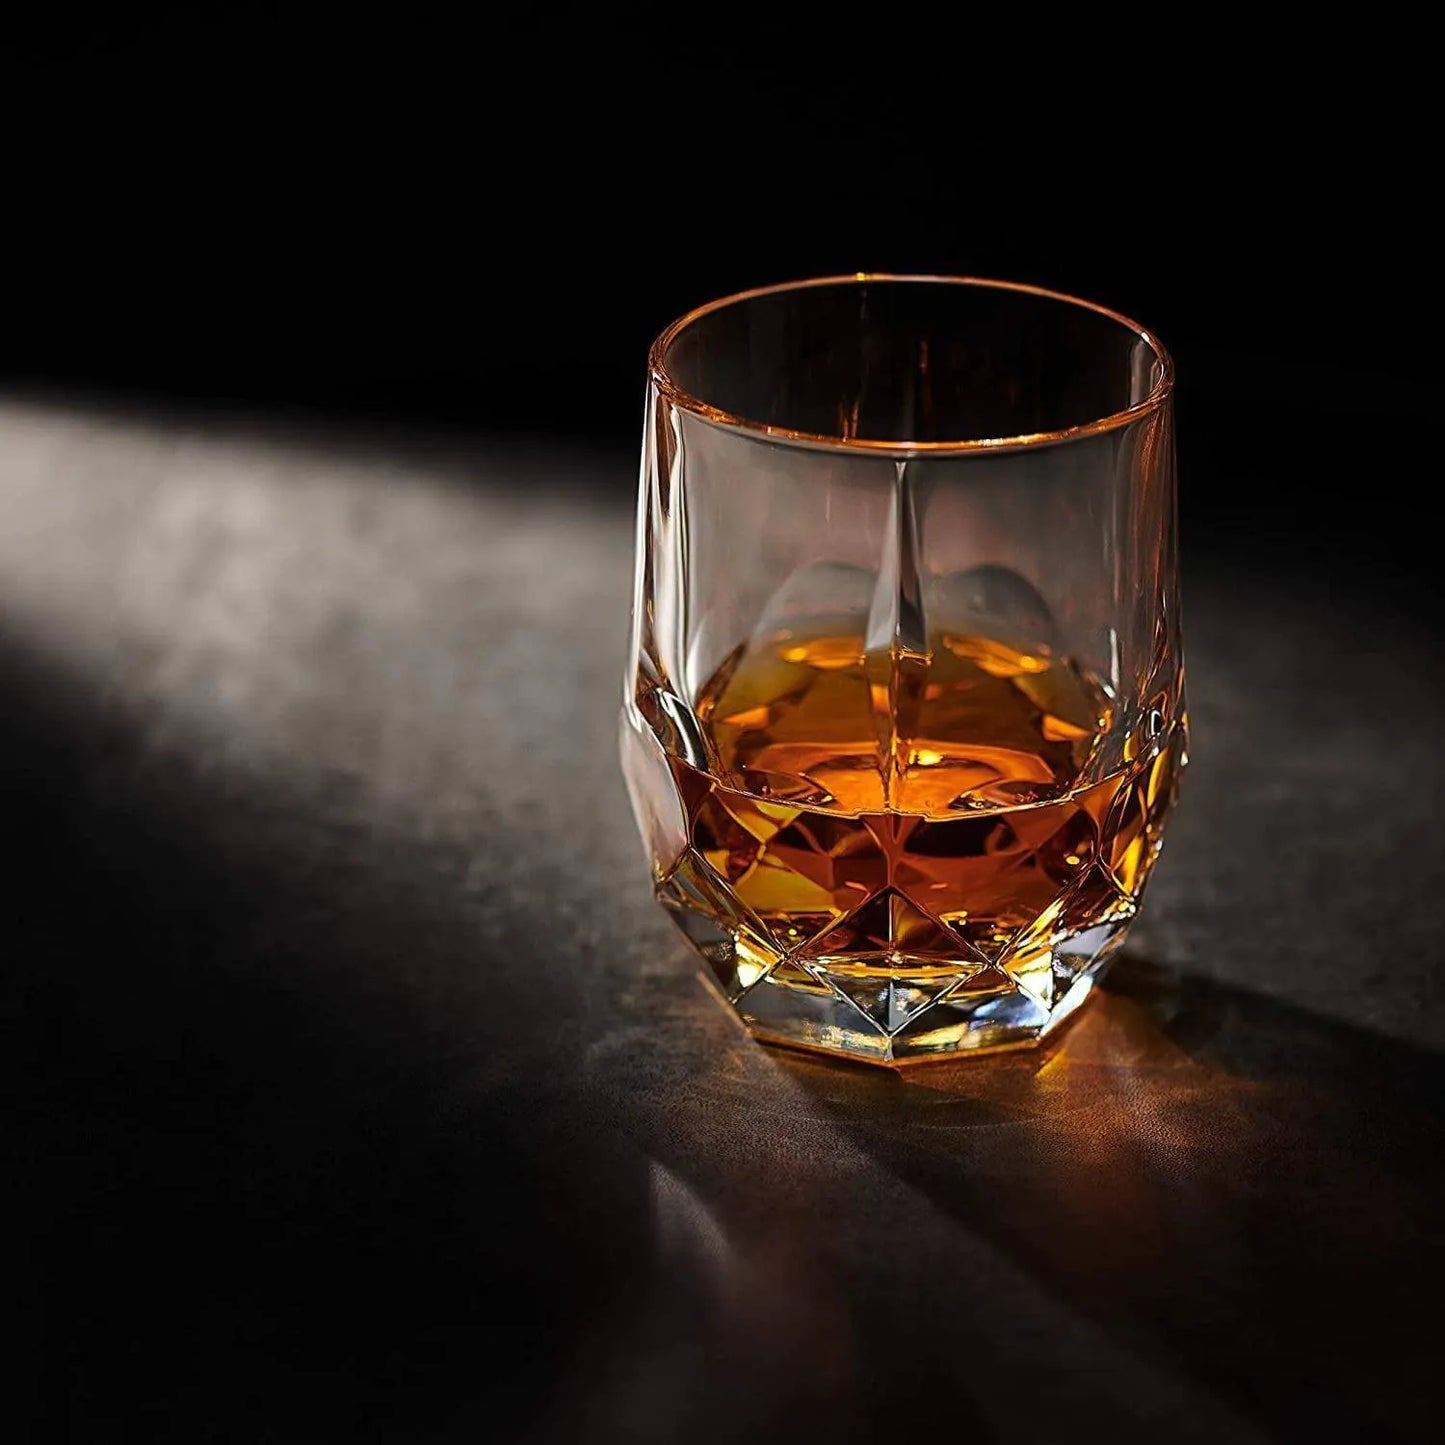 Iconic Whiskyglas mit Whisky gefüllt, schimmert im Lichtstrahl